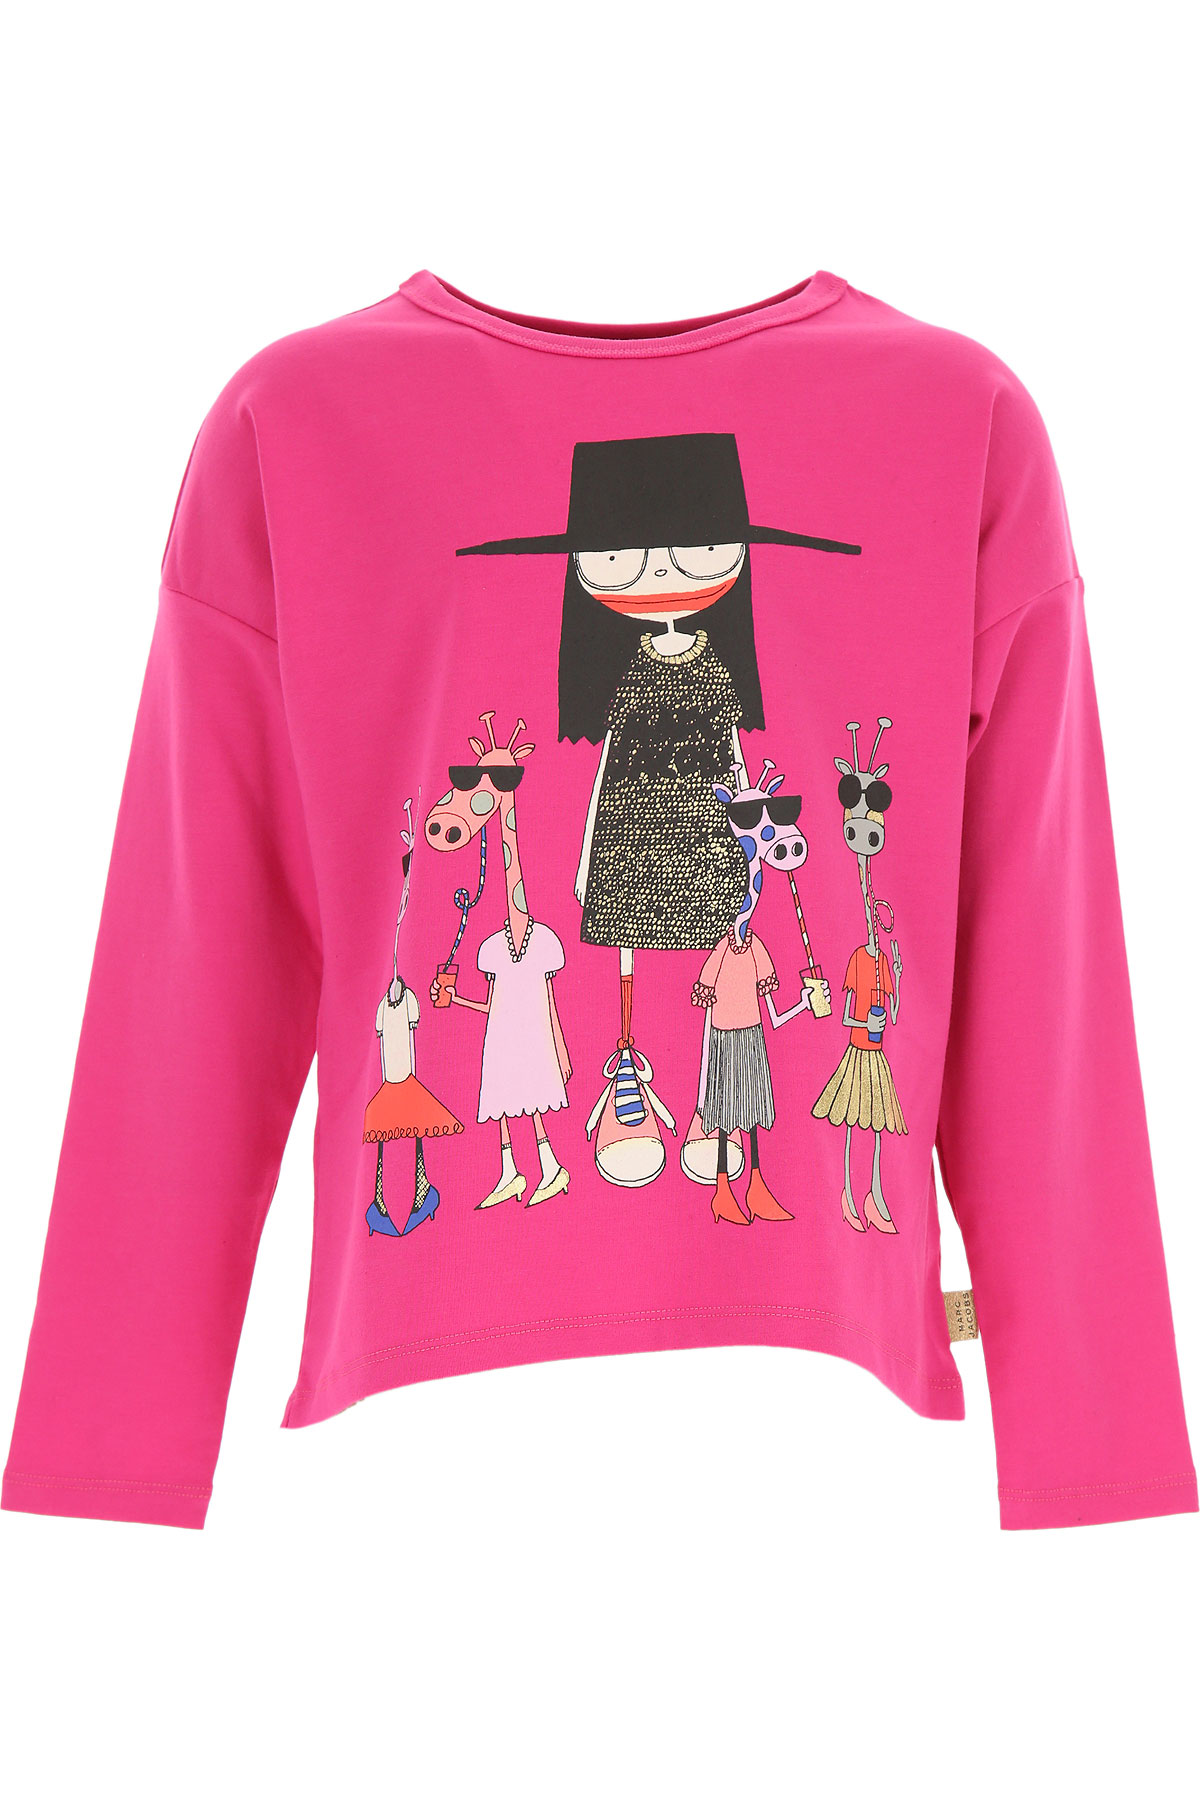 Marc Jacobs Kinder T-Shirt für Mädchen Günstig im Sale, Violett, Polyester, 2017, 10Y 12Y 2Y 4Y 5Y 8Y